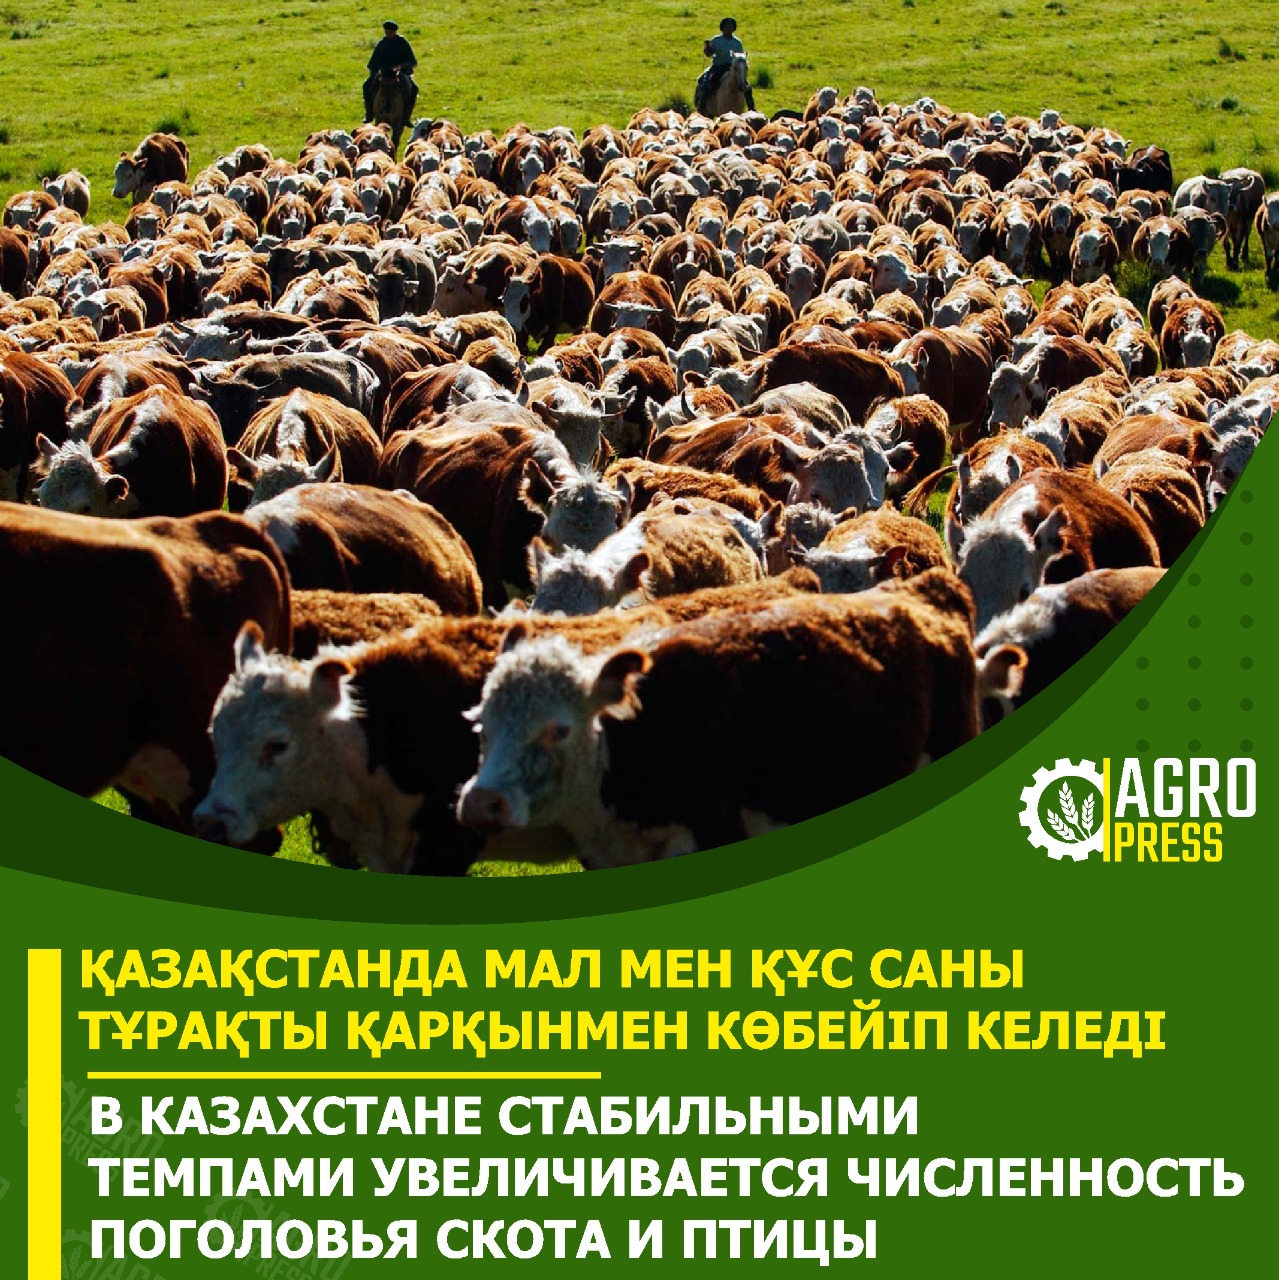 В Казахстане стабильными темпами увеличивается численность поголовья скота и птицы